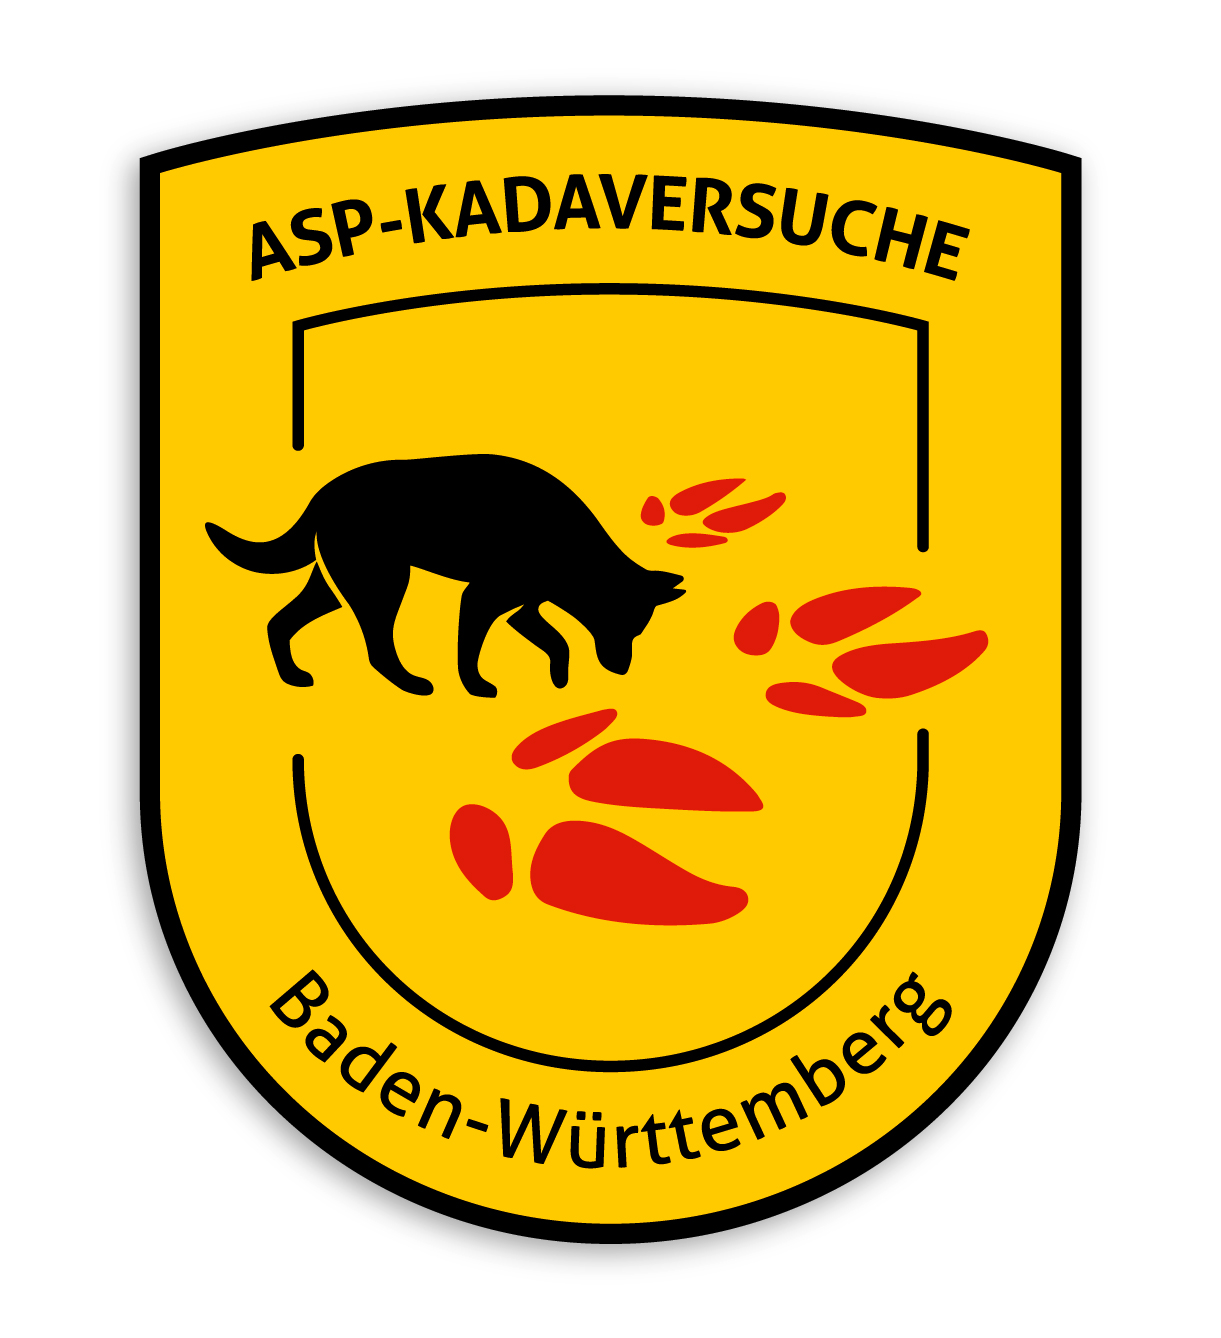 ASP Kadaversuche Baden Wuerttemberg Logo